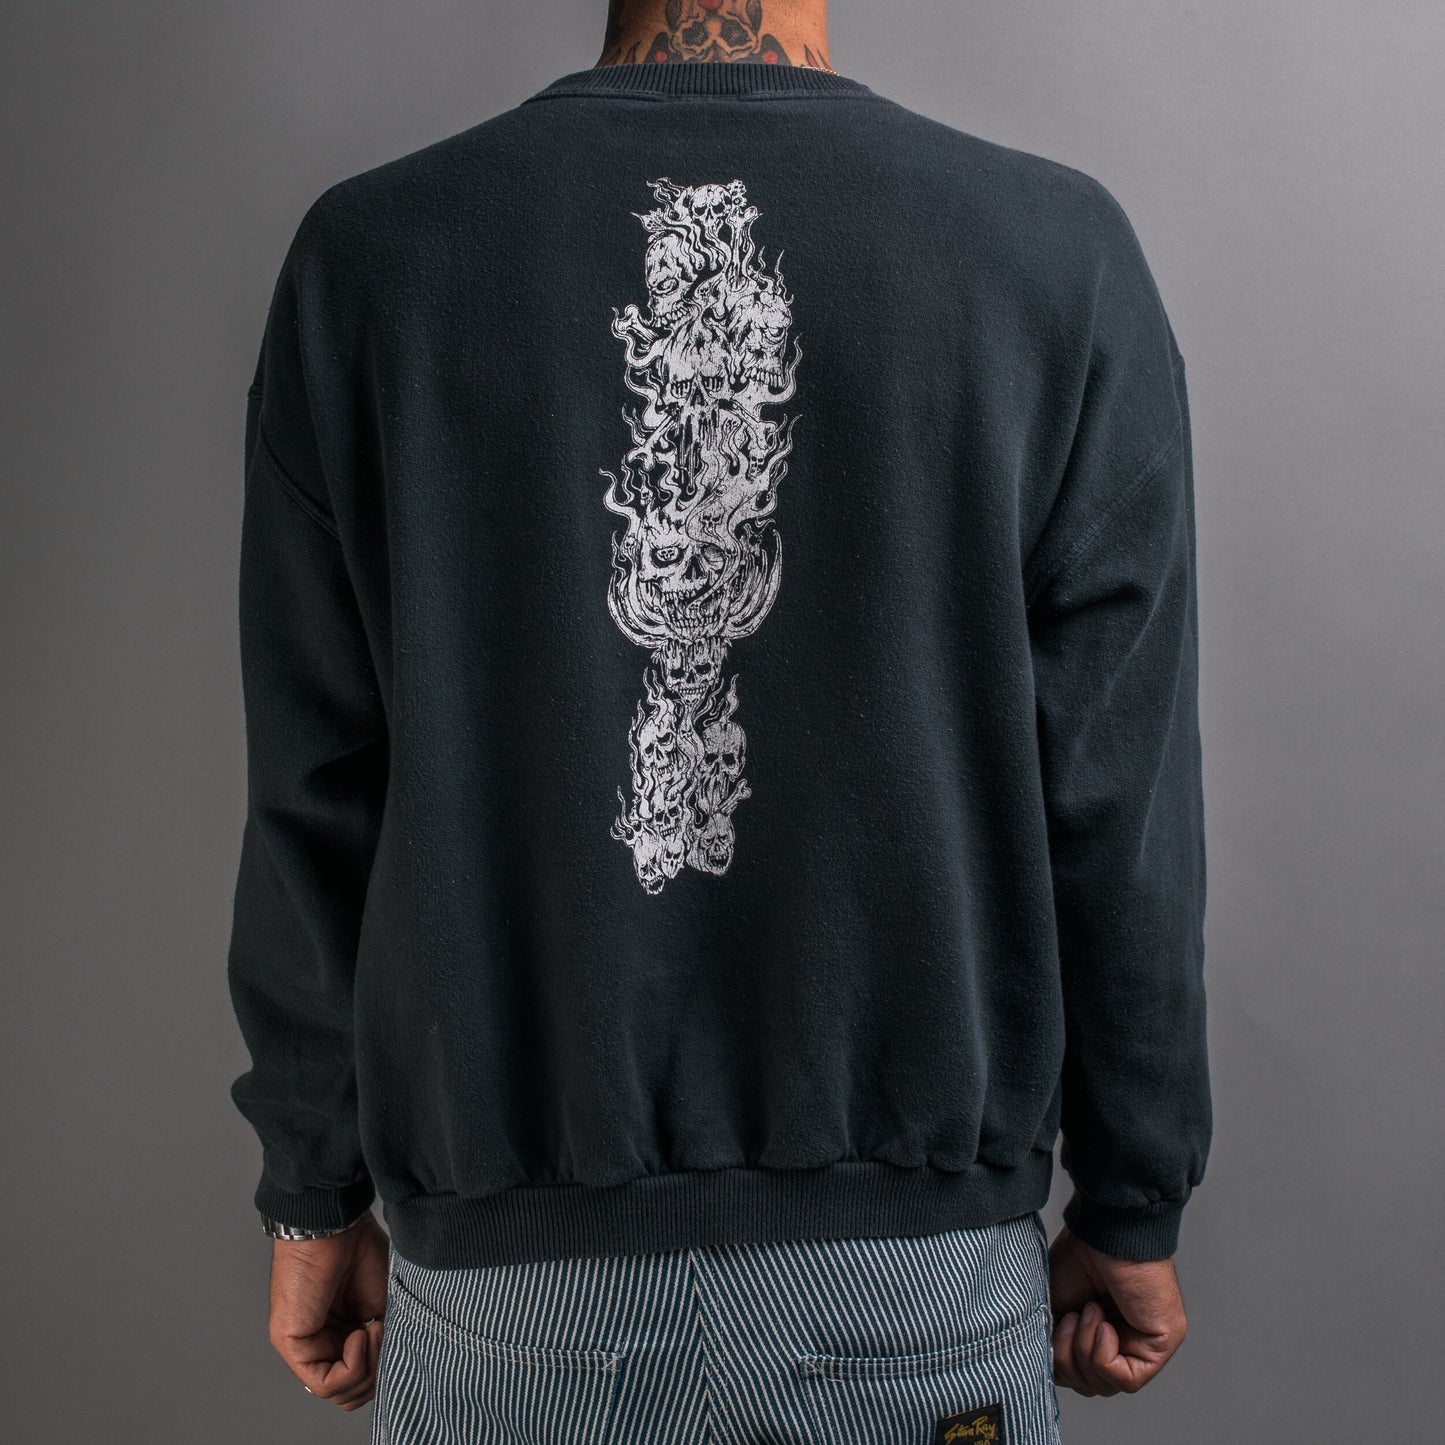 Vintage 90’s Morgoth Sweatshirt